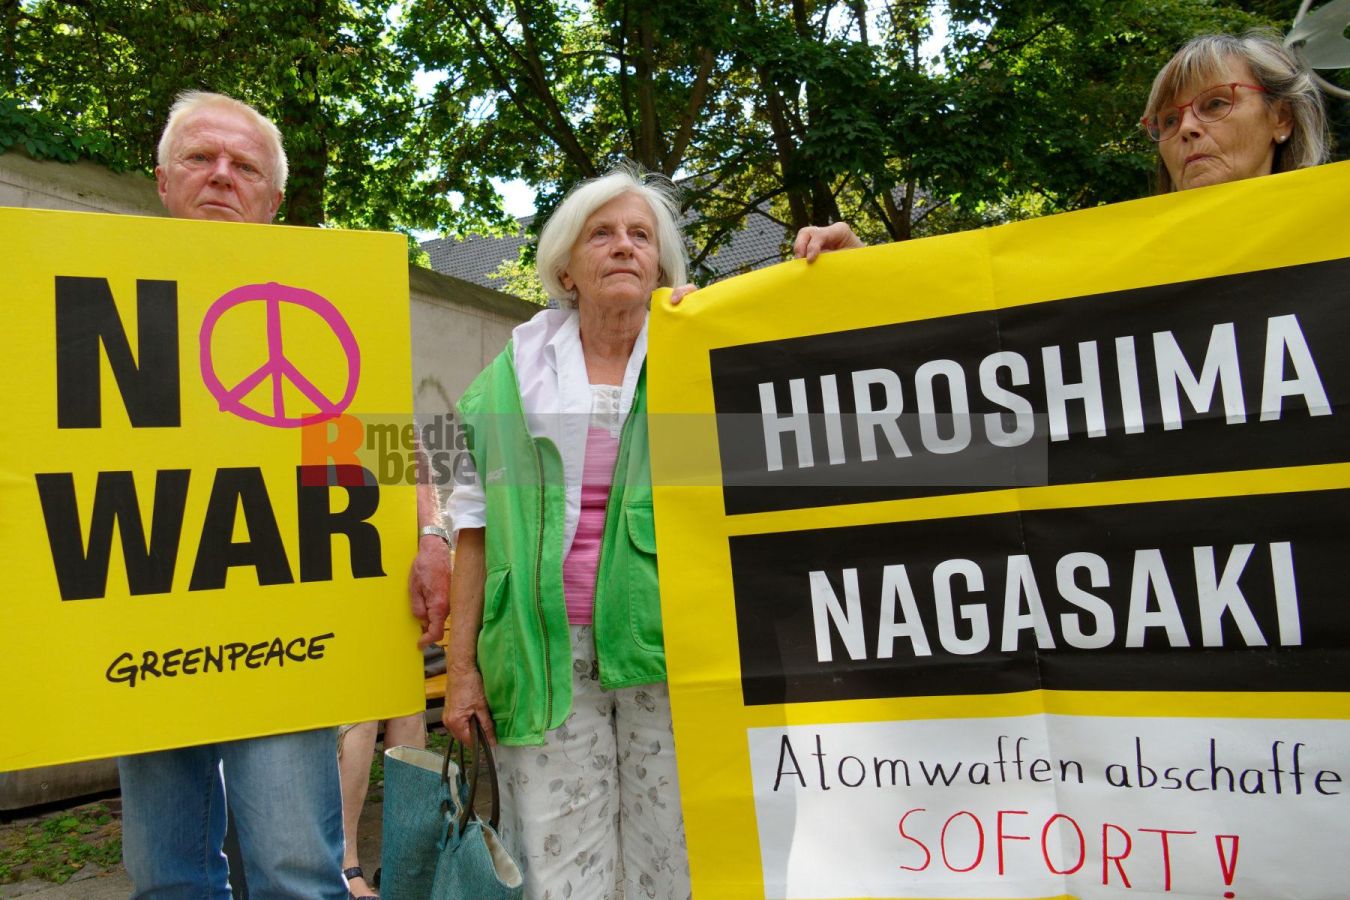 Gedenken an die Atombombenabwürfe auf Hiroshima und Nagasaki <i>Bild Bitzel/R-mediabase</i> <br><a href=/confor2/?bld=67760&pst=67722&aid=70&i1=Bitzel/R-mediabase>Download Bild 67760</a>  <br><a href=/?p=67722>Zum Beitrag 67722</a>